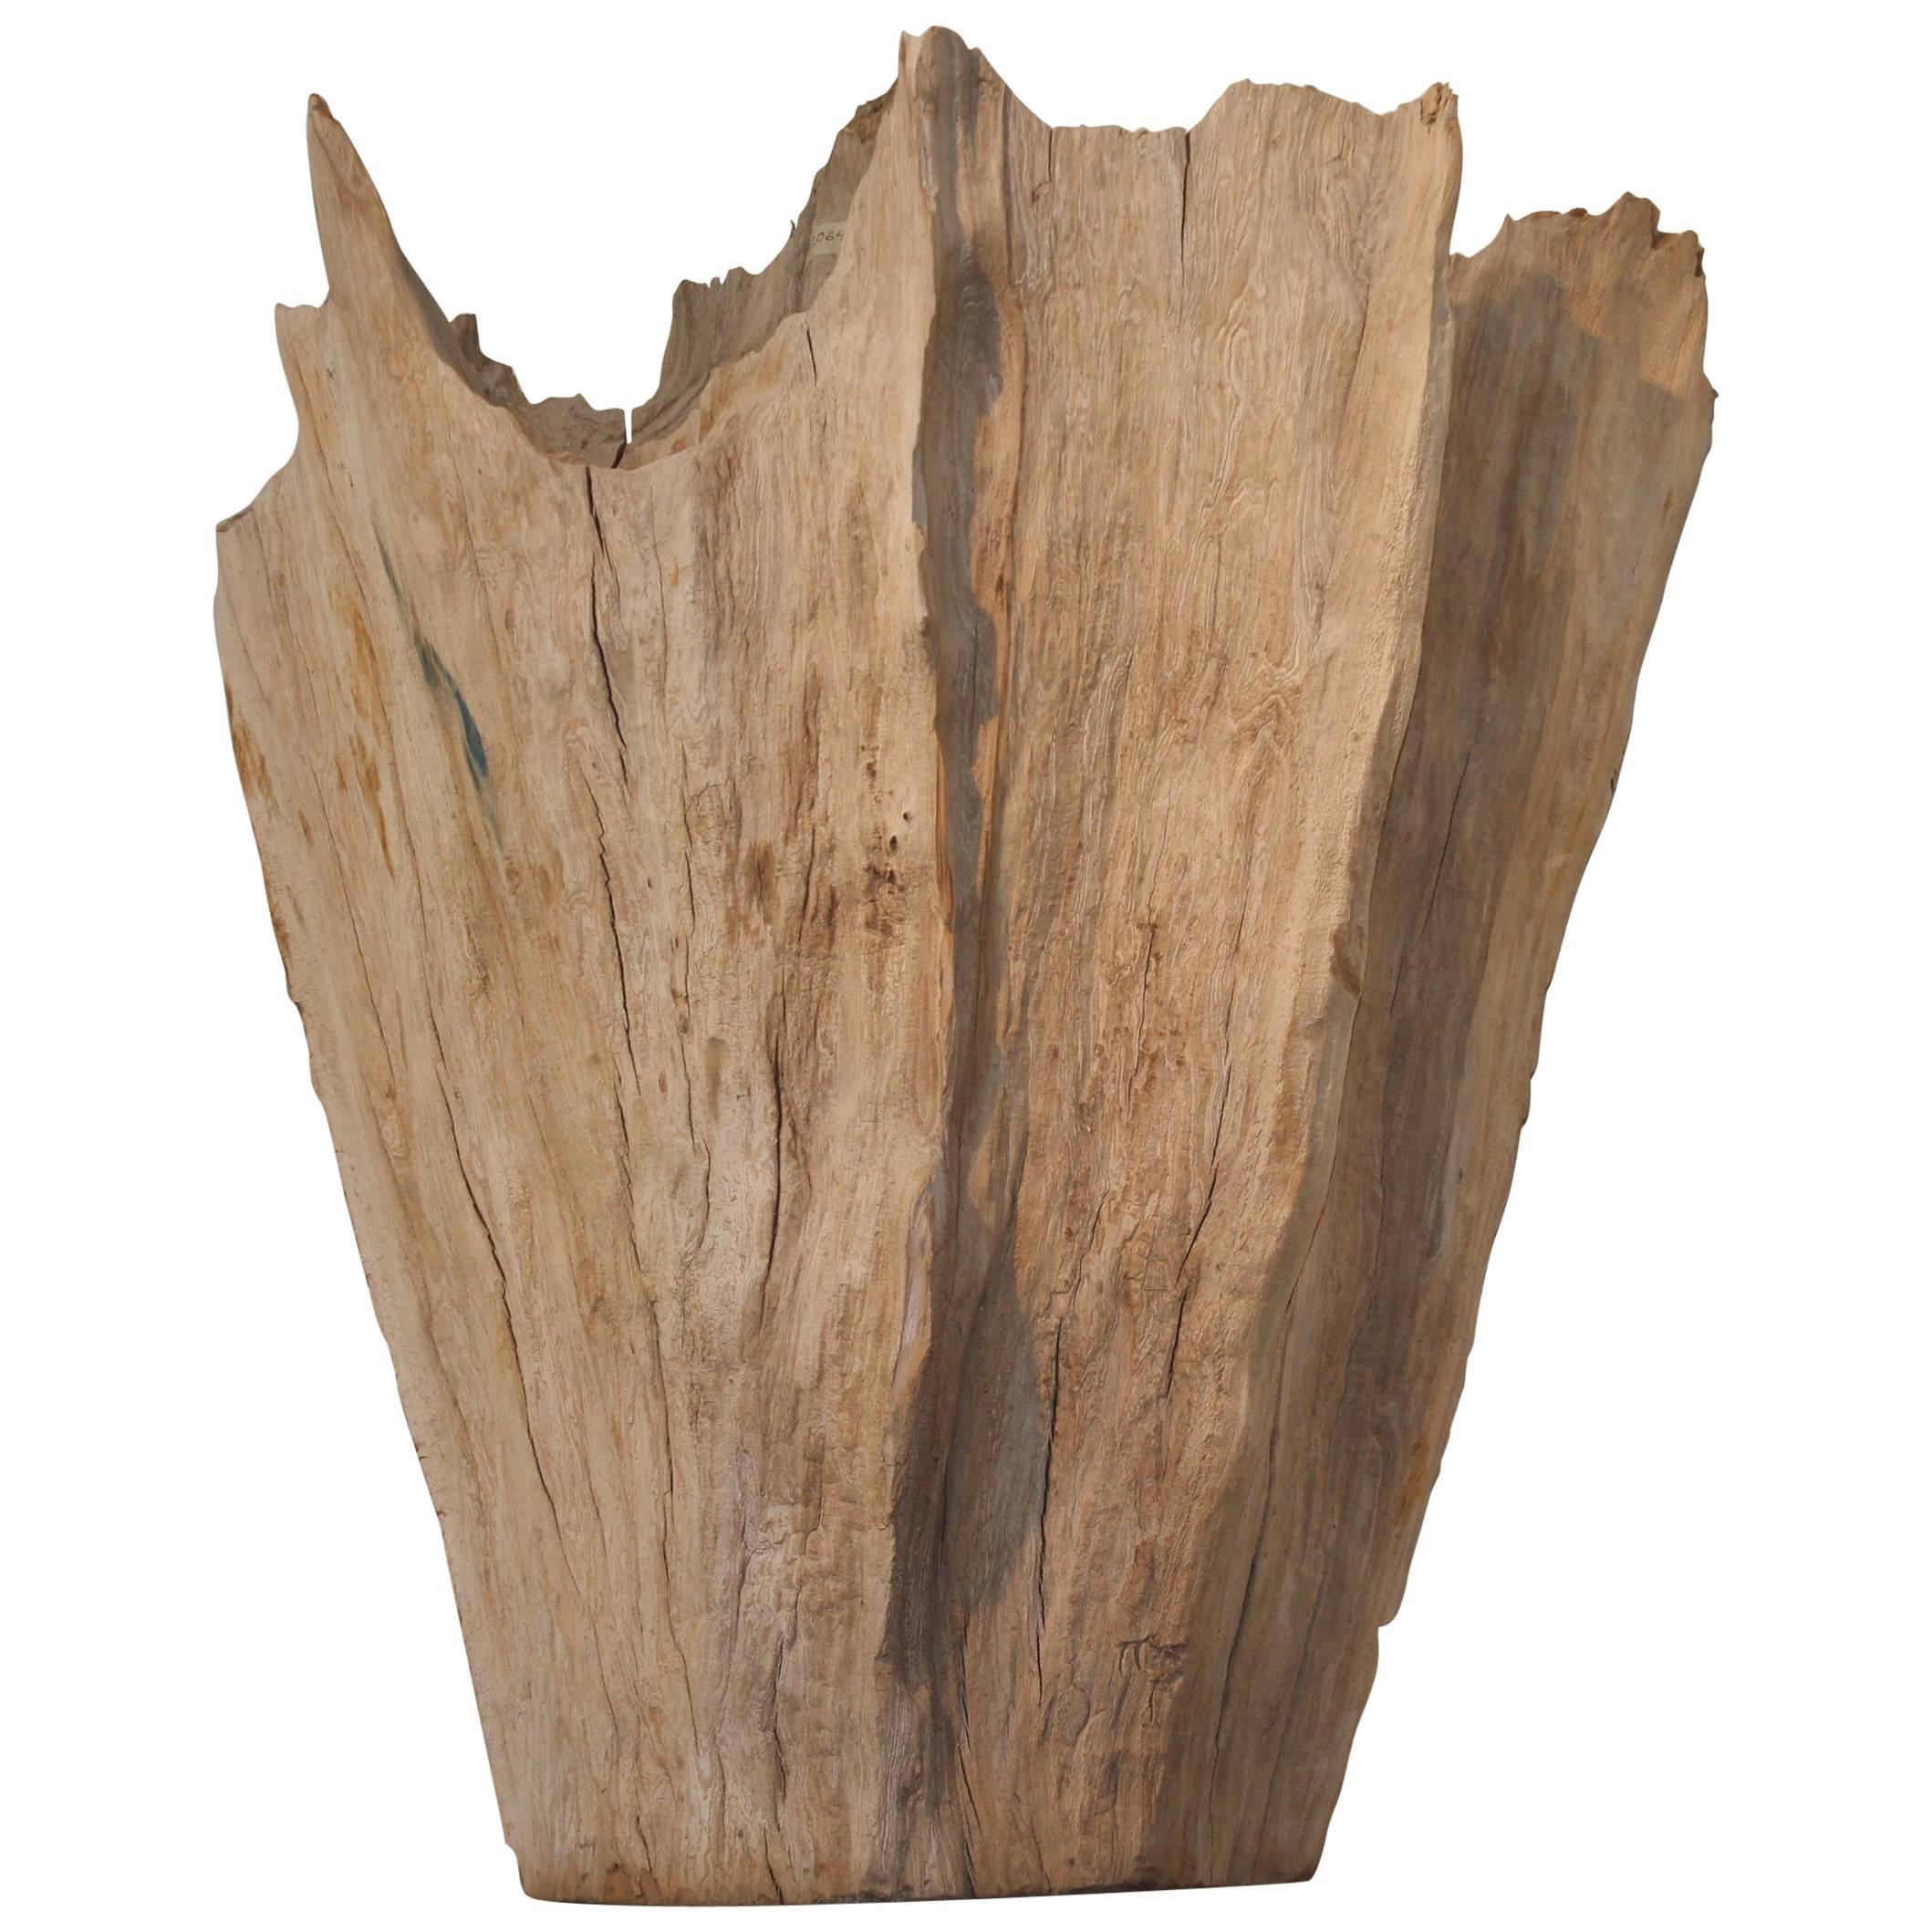 Organic Driftwood as Sculpture